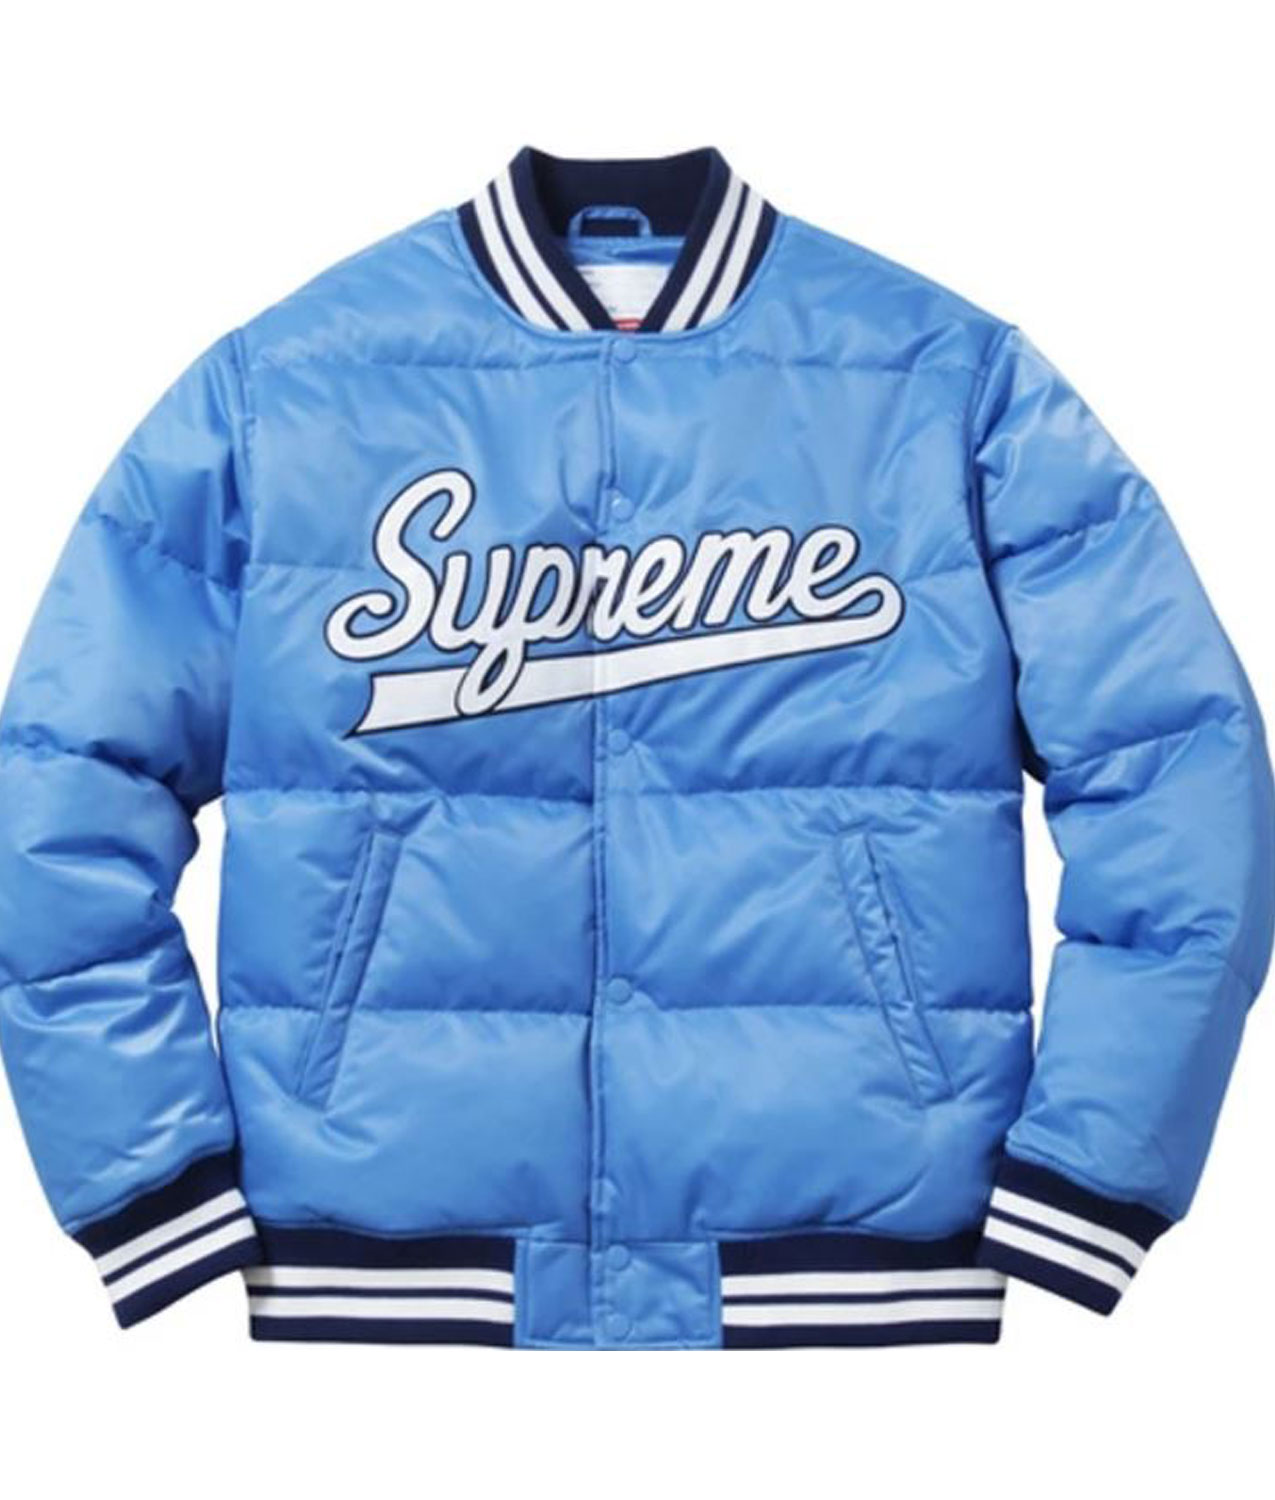 supreme varsity jacket